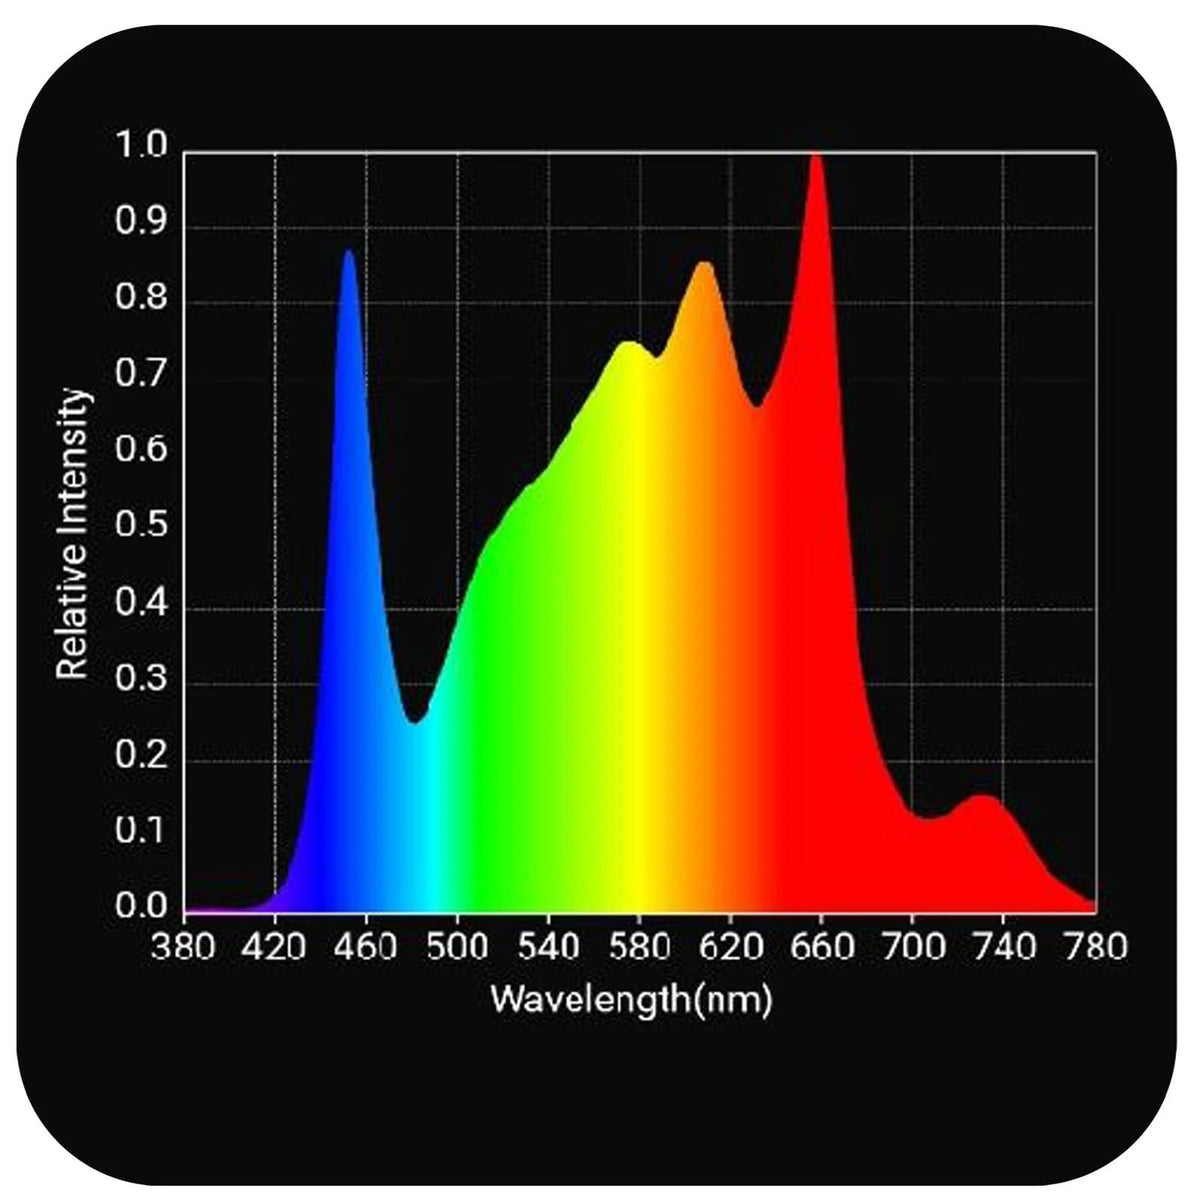 Horticulture Lighting Group HLG 320 Rspec FR Full Spectrum LED GRow Light spectrum